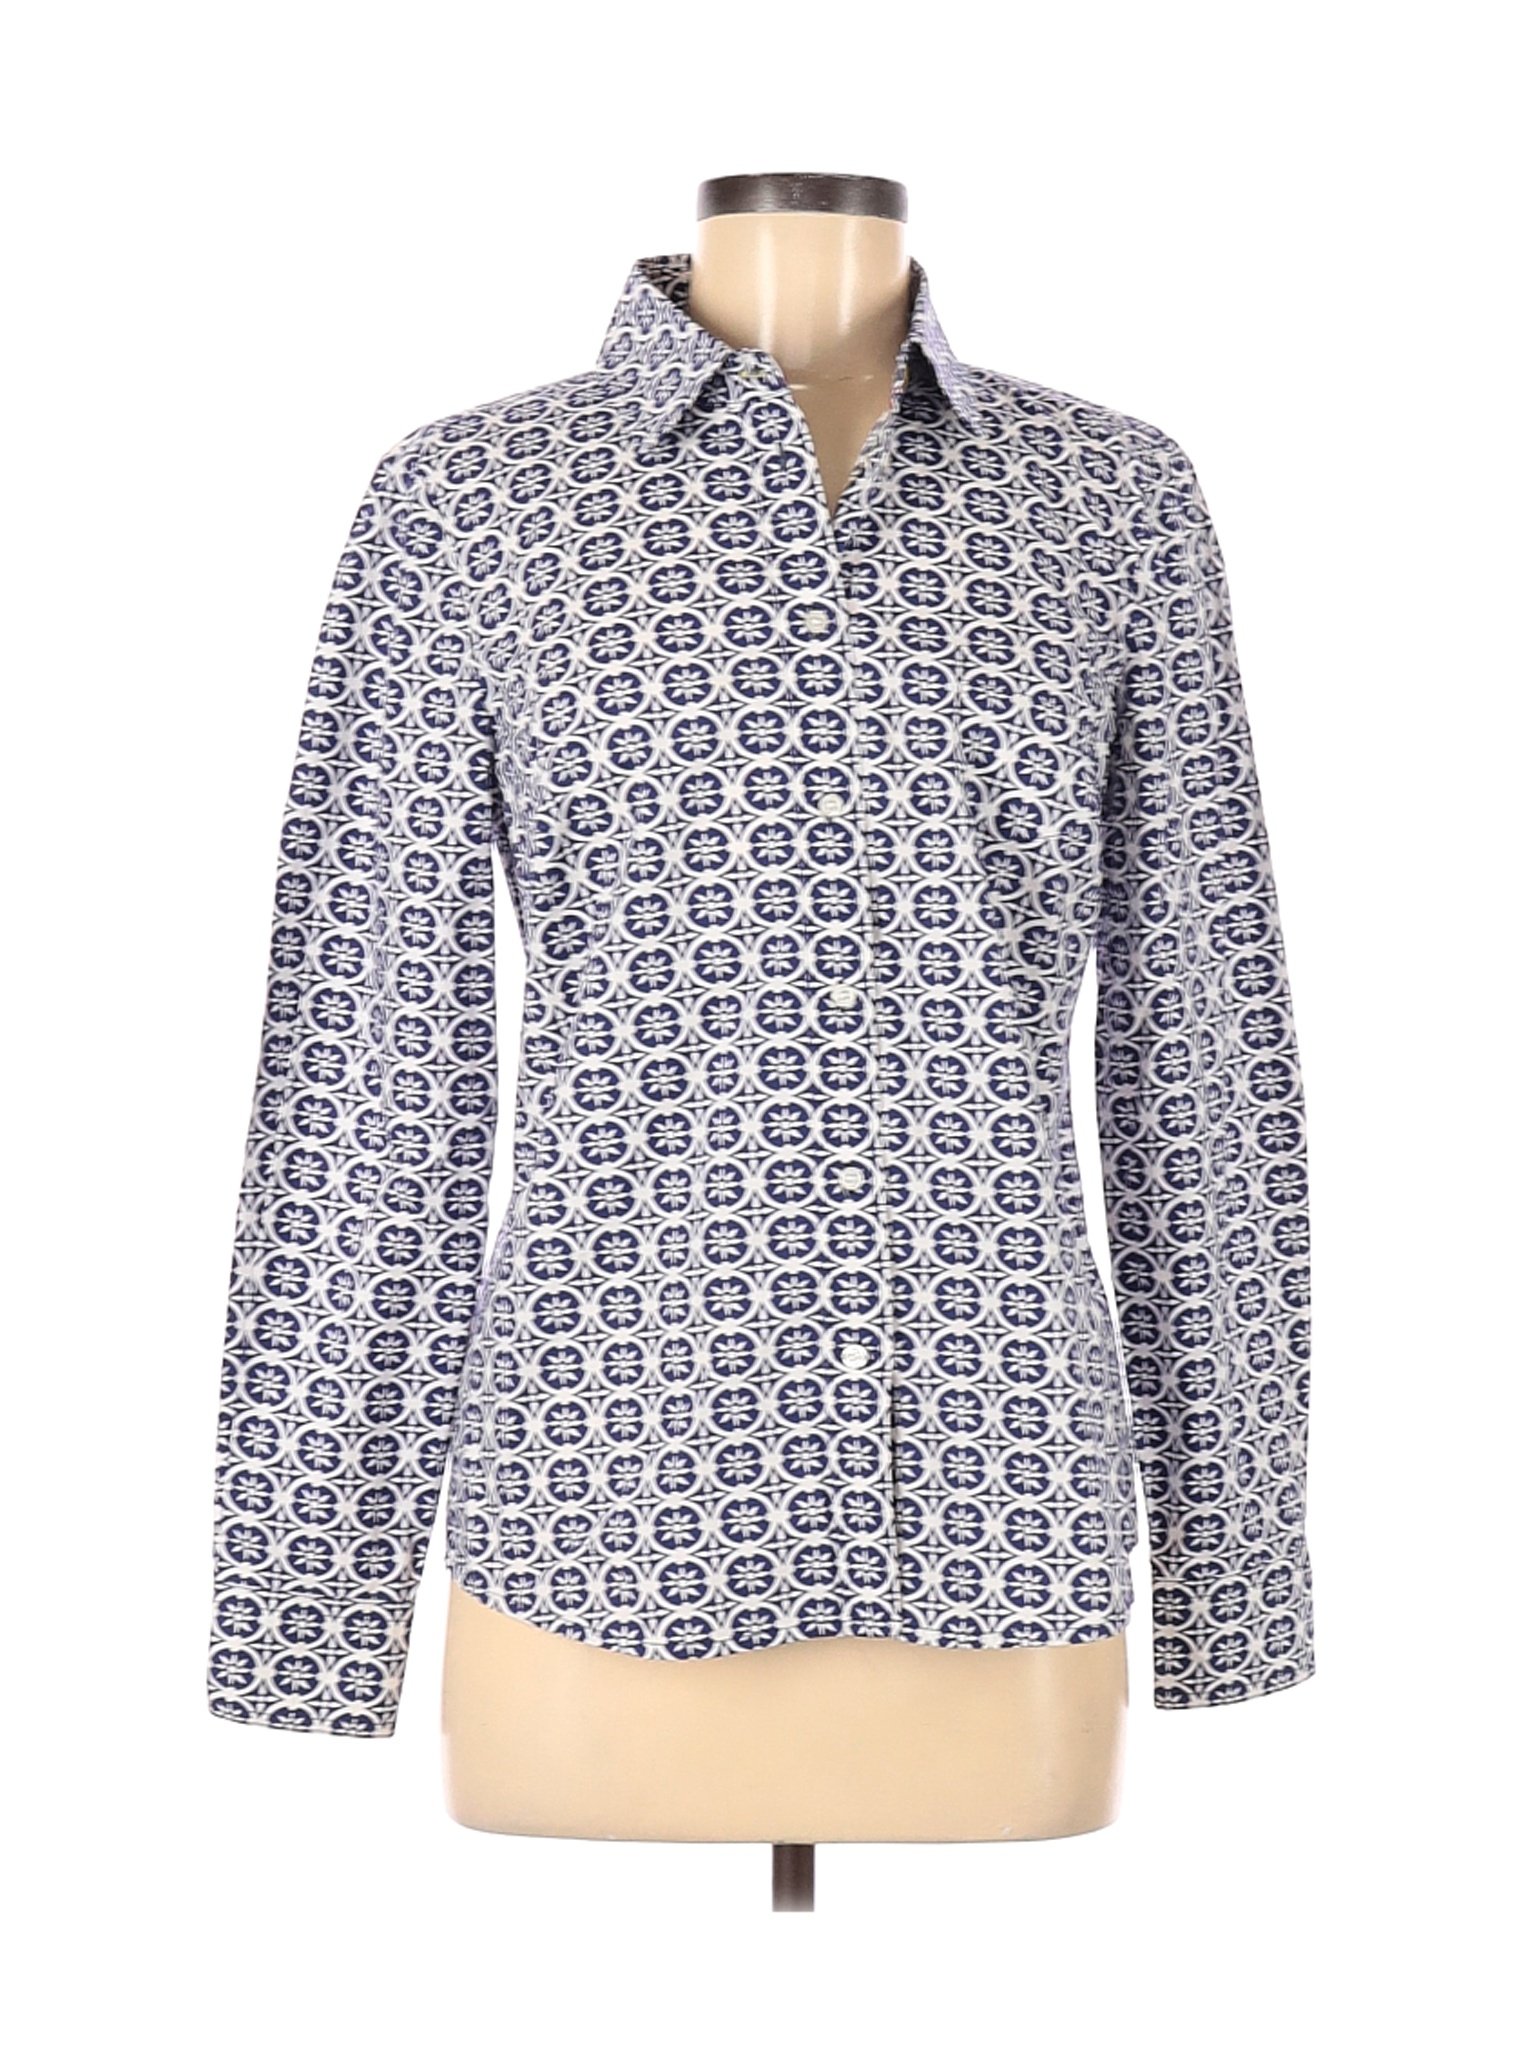 Boden Women Blue Long Sleeve Button-Down Shirt 6 | eBay